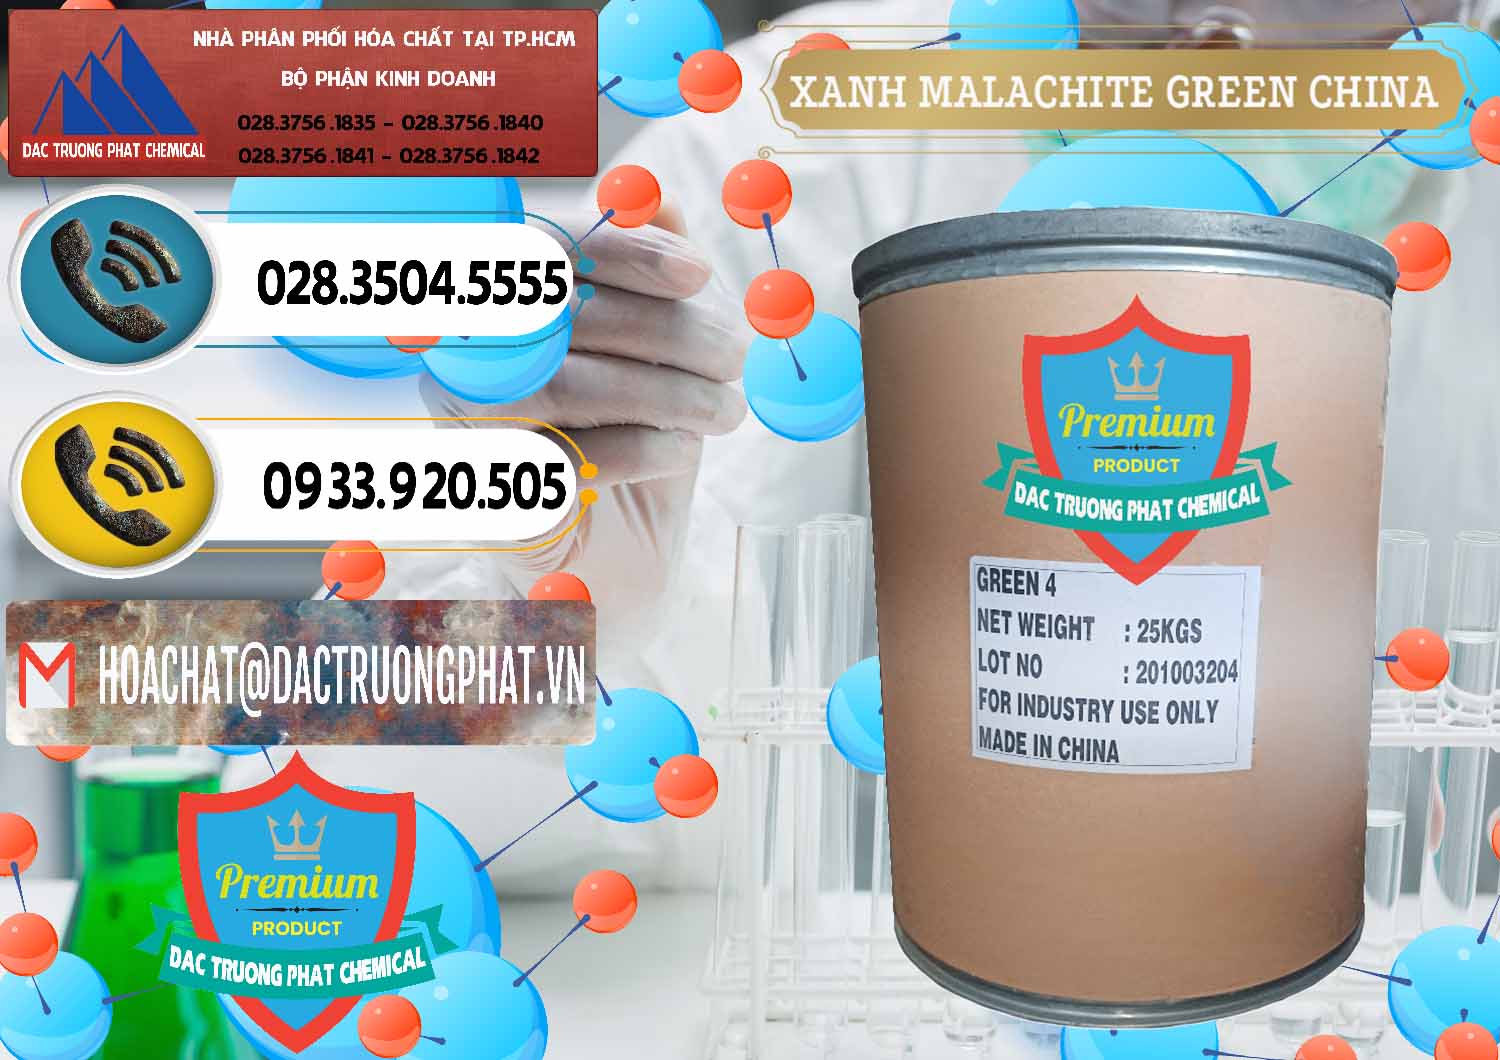 Công ty cung ứng _ bán Xanh Malachite Green Trung Quốc China - 0325 - Cty chuyên kinh doanh - cung cấp hóa chất tại TP.HCM - hoachatdetnhuom.vn